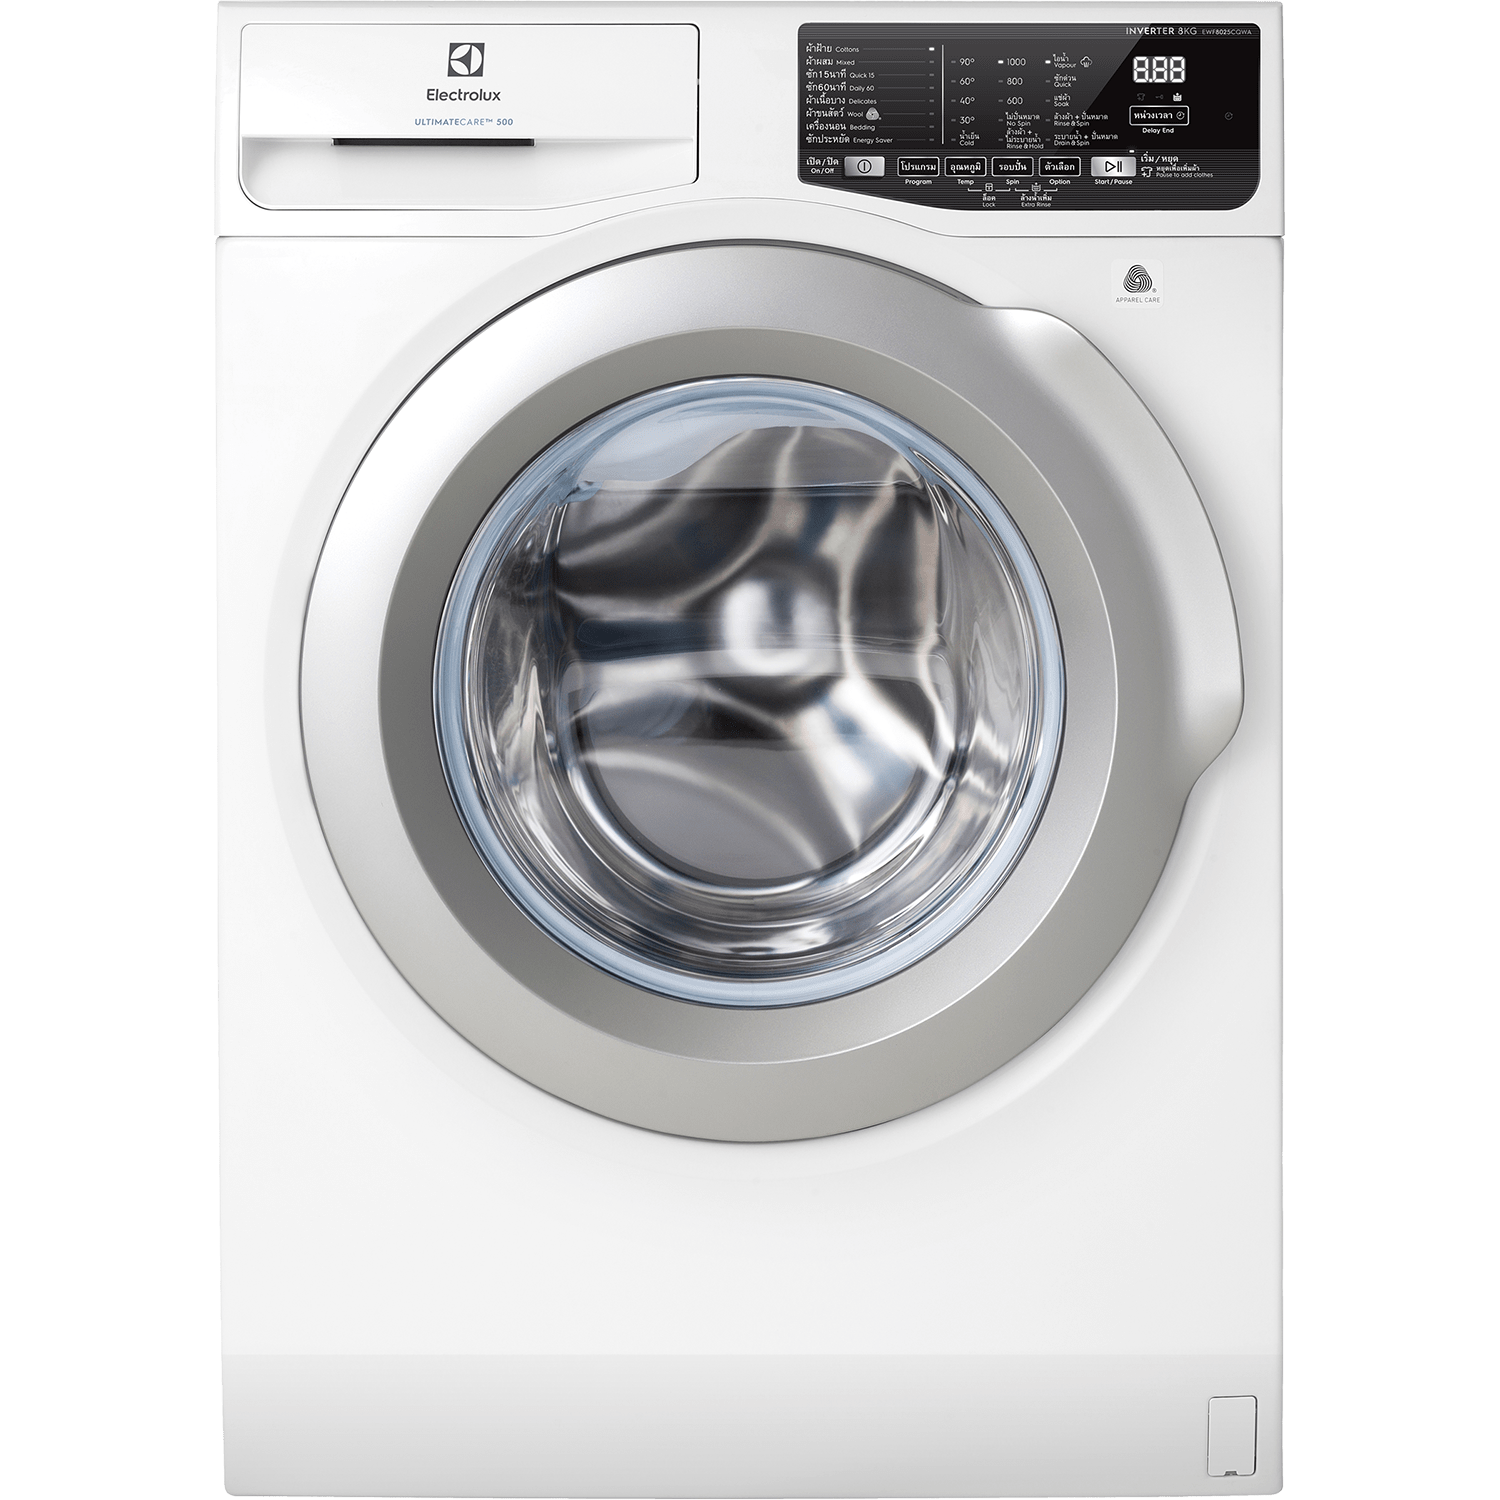 Thiết kế gọn nhẹ và sang trọng của máy giặt Electrolux